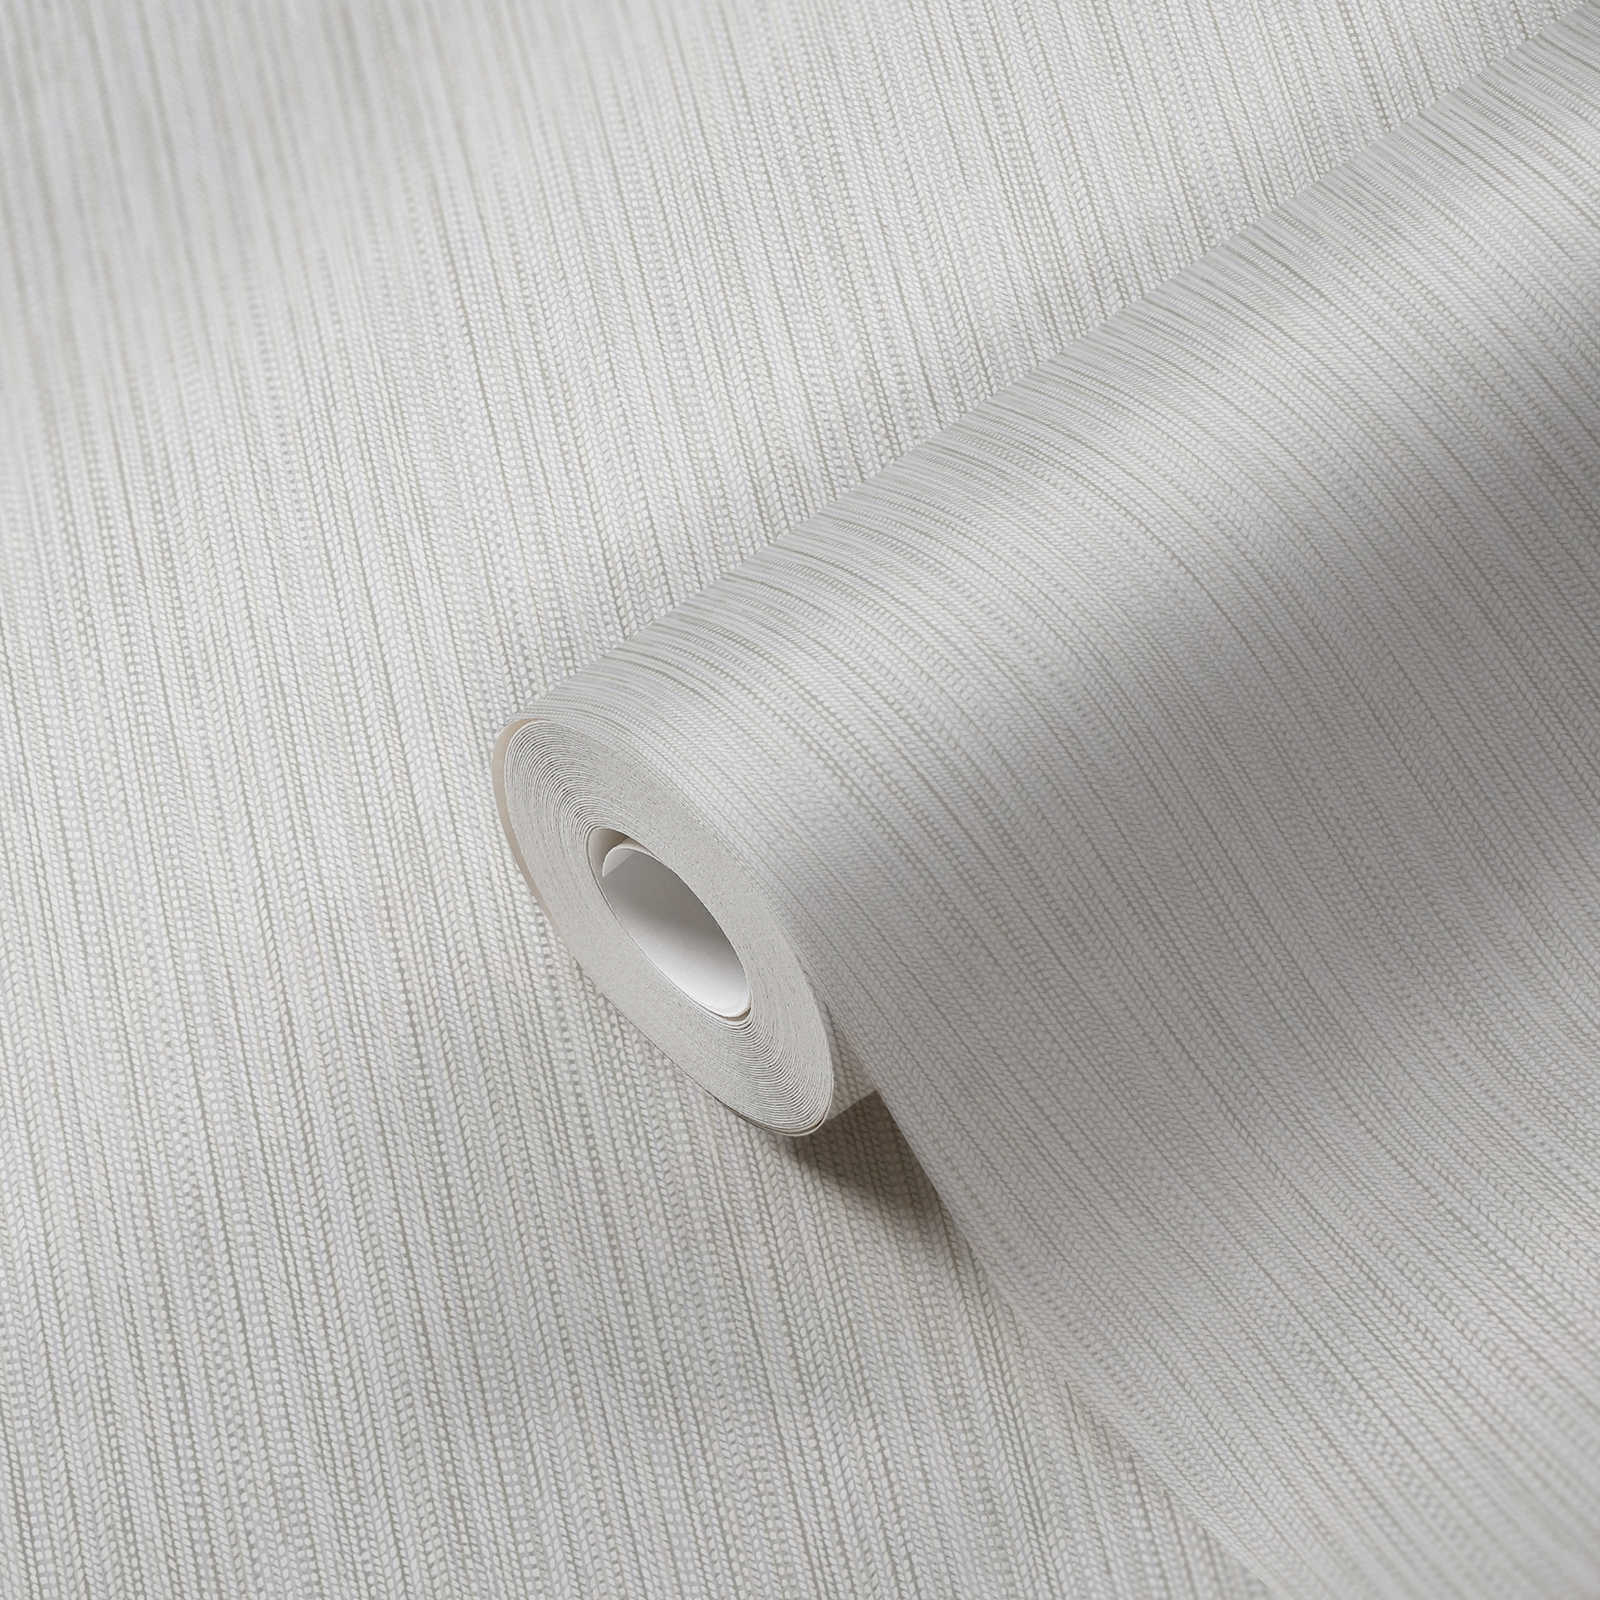             Papel pintado no tejido con estructura de tejido trenzado - blanco, gris claro
        